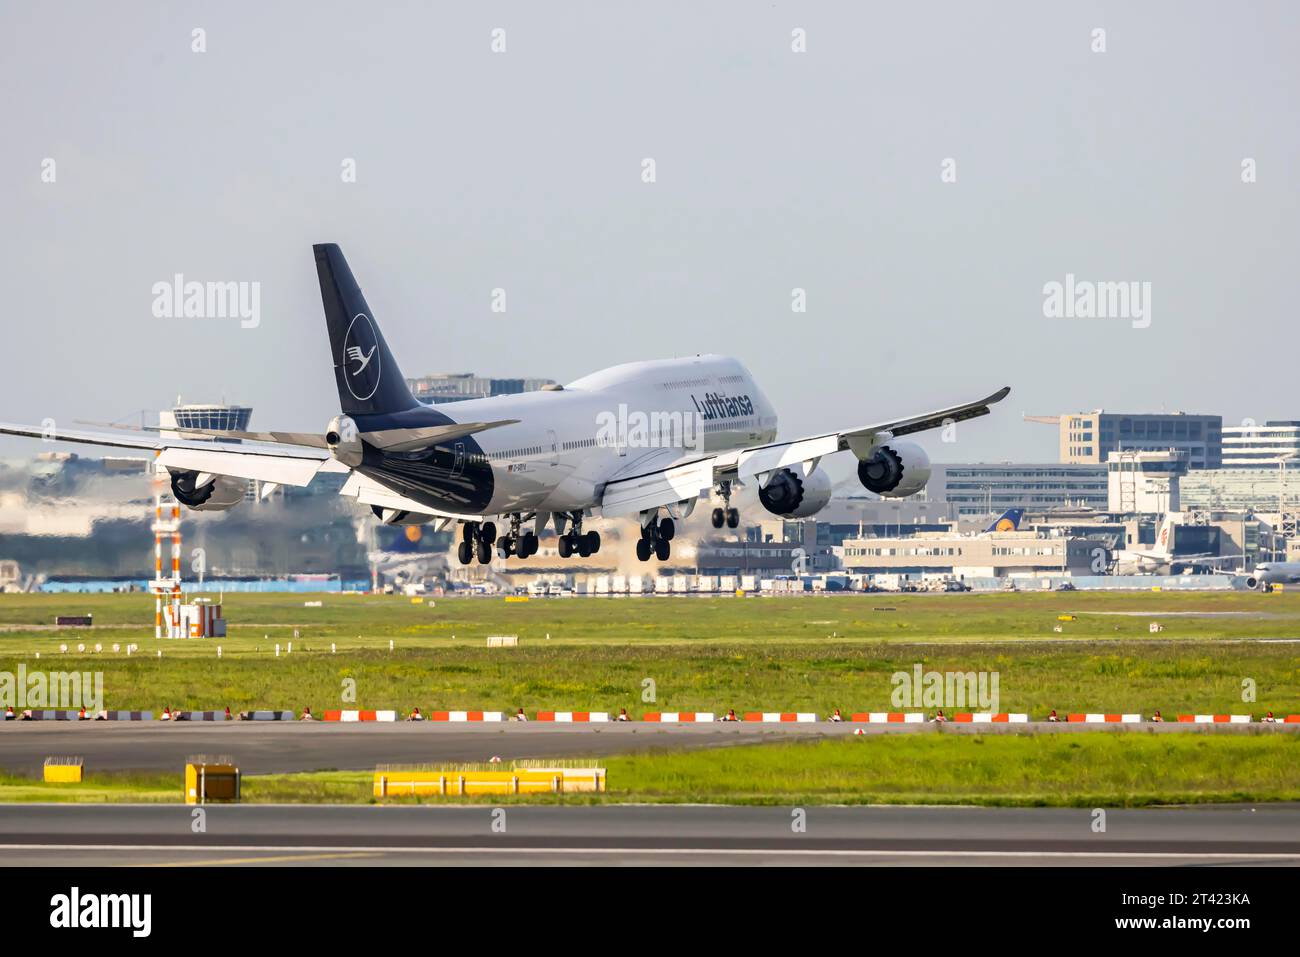 Avion à l'atterrissage, D-ABYA, LUFTHANSA, BOEING 747-8. Aéroport de Fraport, Francfort-sur-le-main, Hesse, Allemagne Banque D'Images